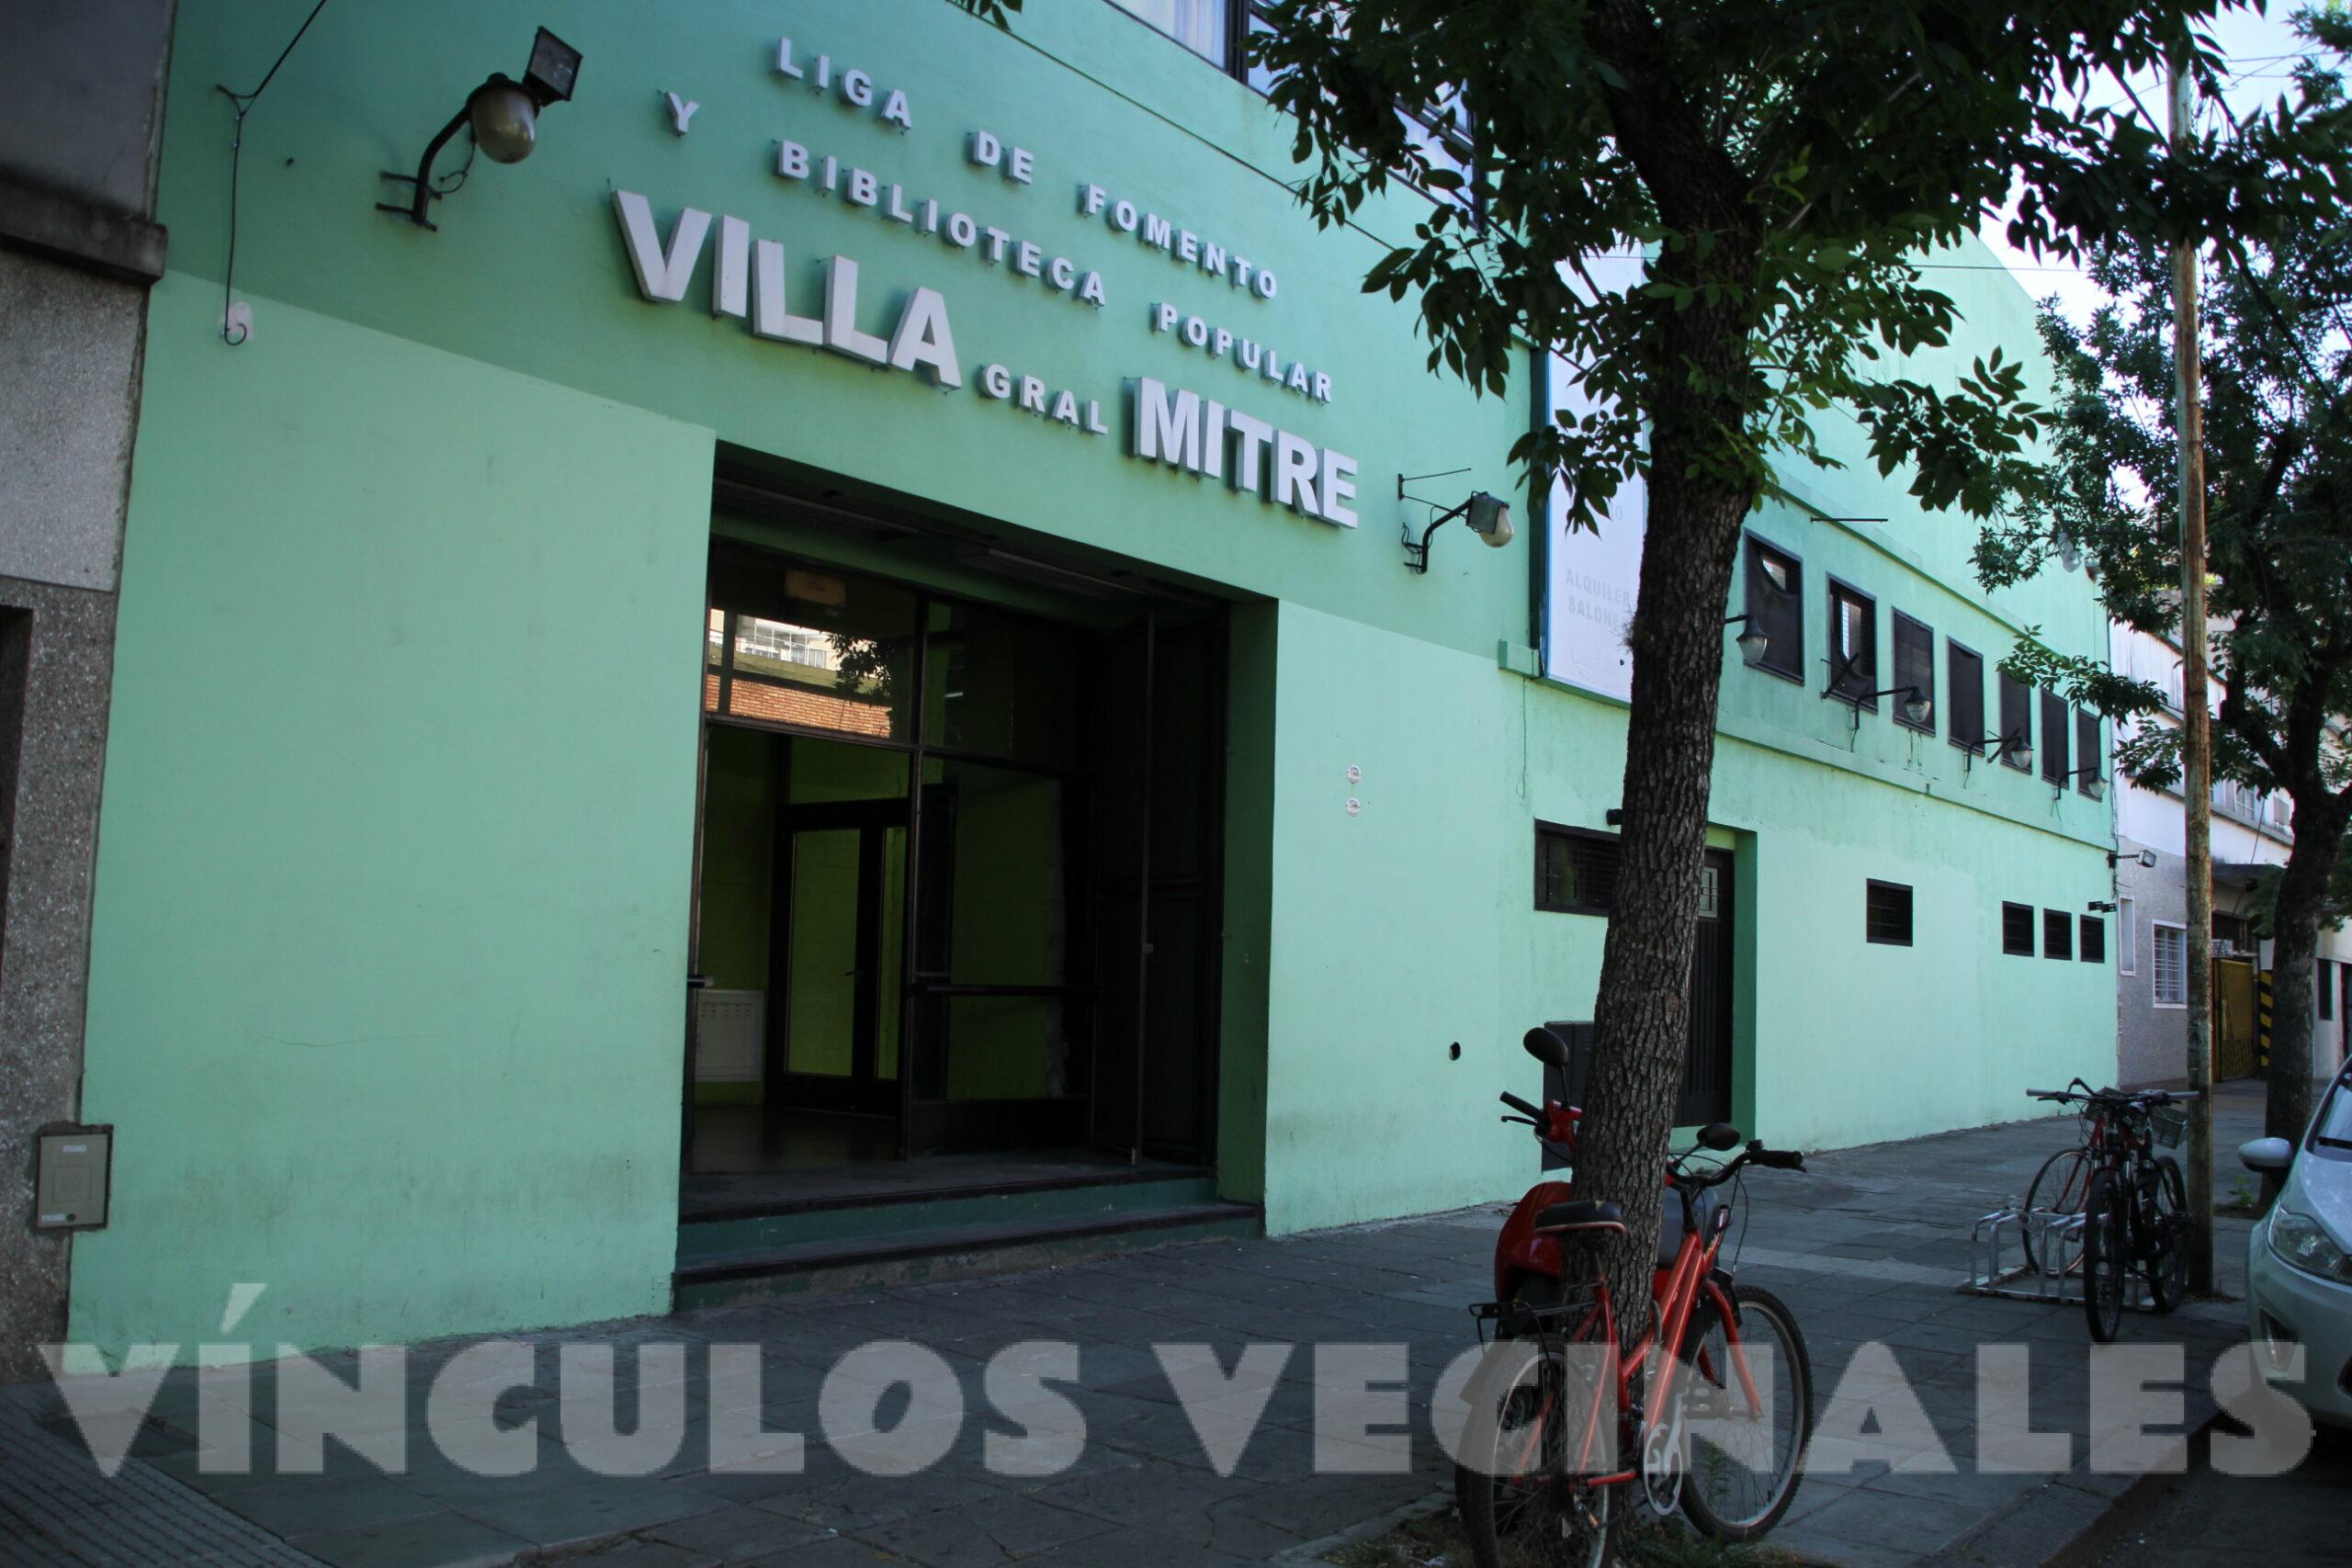 Club Villa General Mitre - Vínculos Vecinales